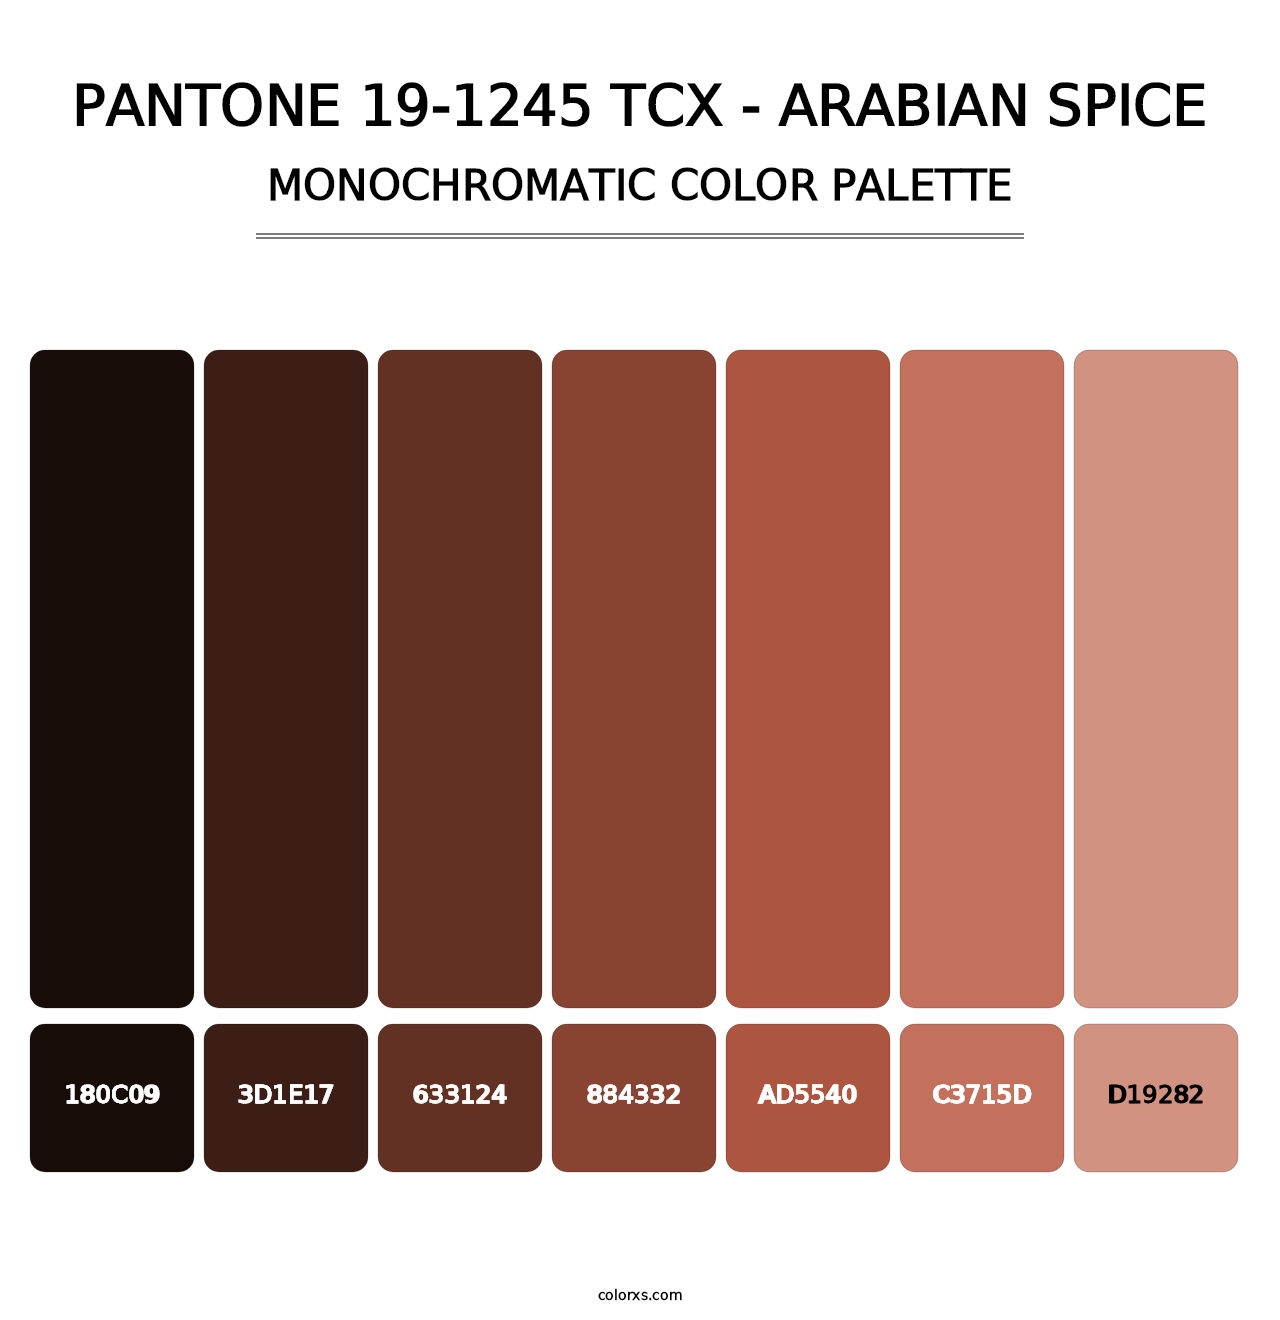 PANTONE 19-1245 TCX - Arabian Spice - Monochromatic Color Palette